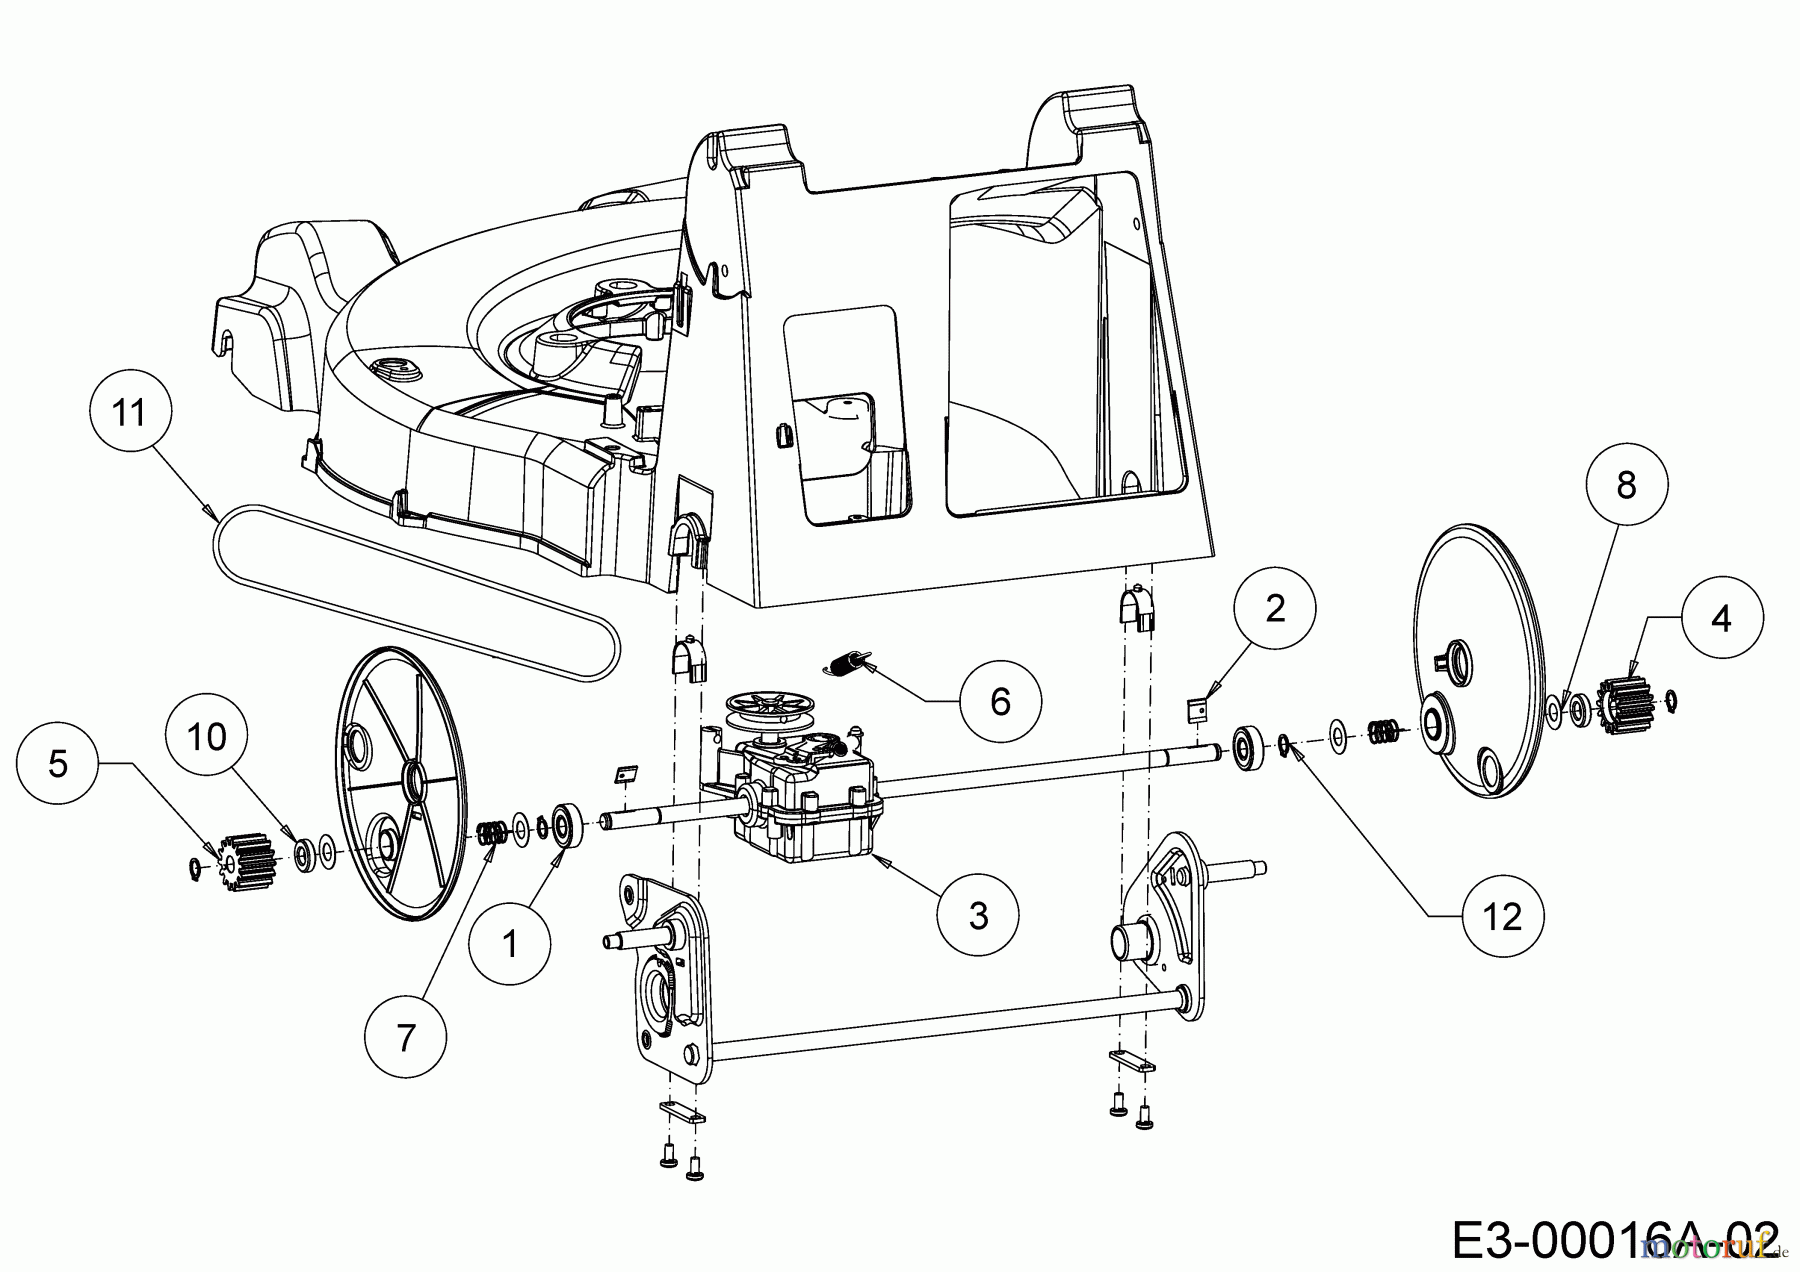  WOLF-Garten Expert Petrol mower self propelled Expert 46 B S 12A-YA5L650  (2018) Gearbox, Belt